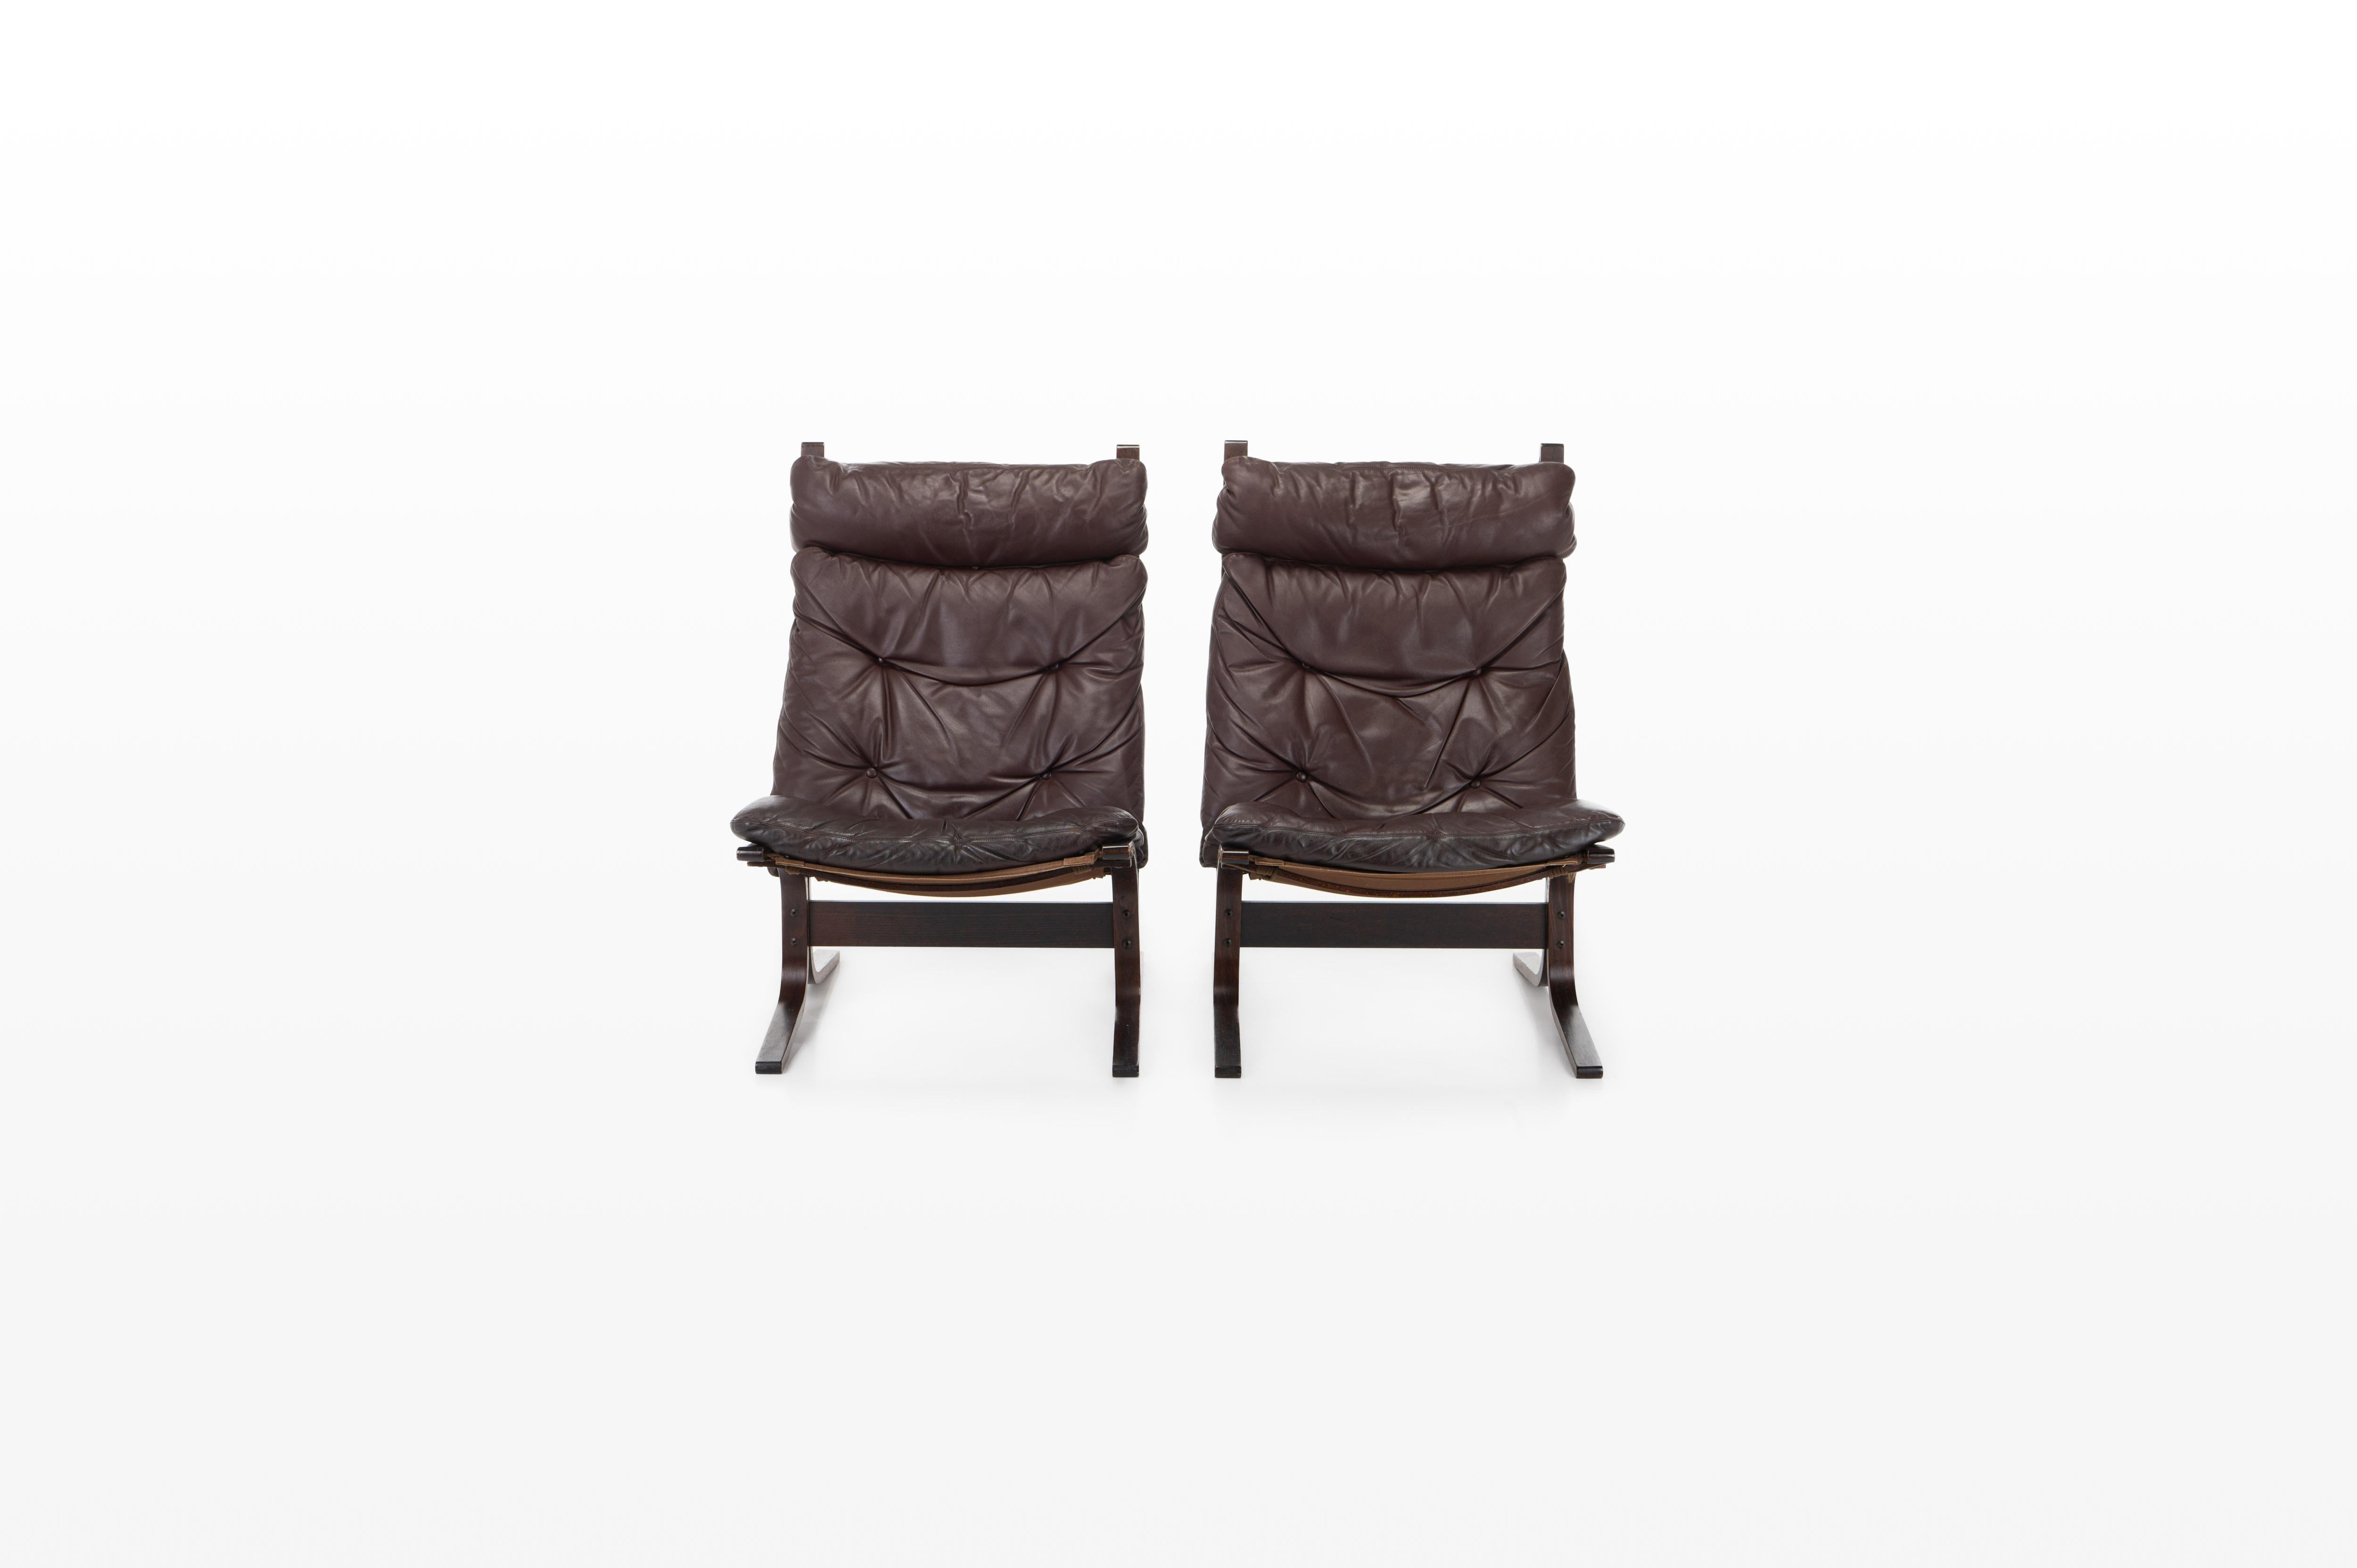 Superbe paire de chaises longues vintage 'Siesta'. Cette chaise longue a été conçue par Ingmar Relling et fabriquée par Westnofa, en Norvège. Cuir bordeaux / marron en très bon état d'origine.